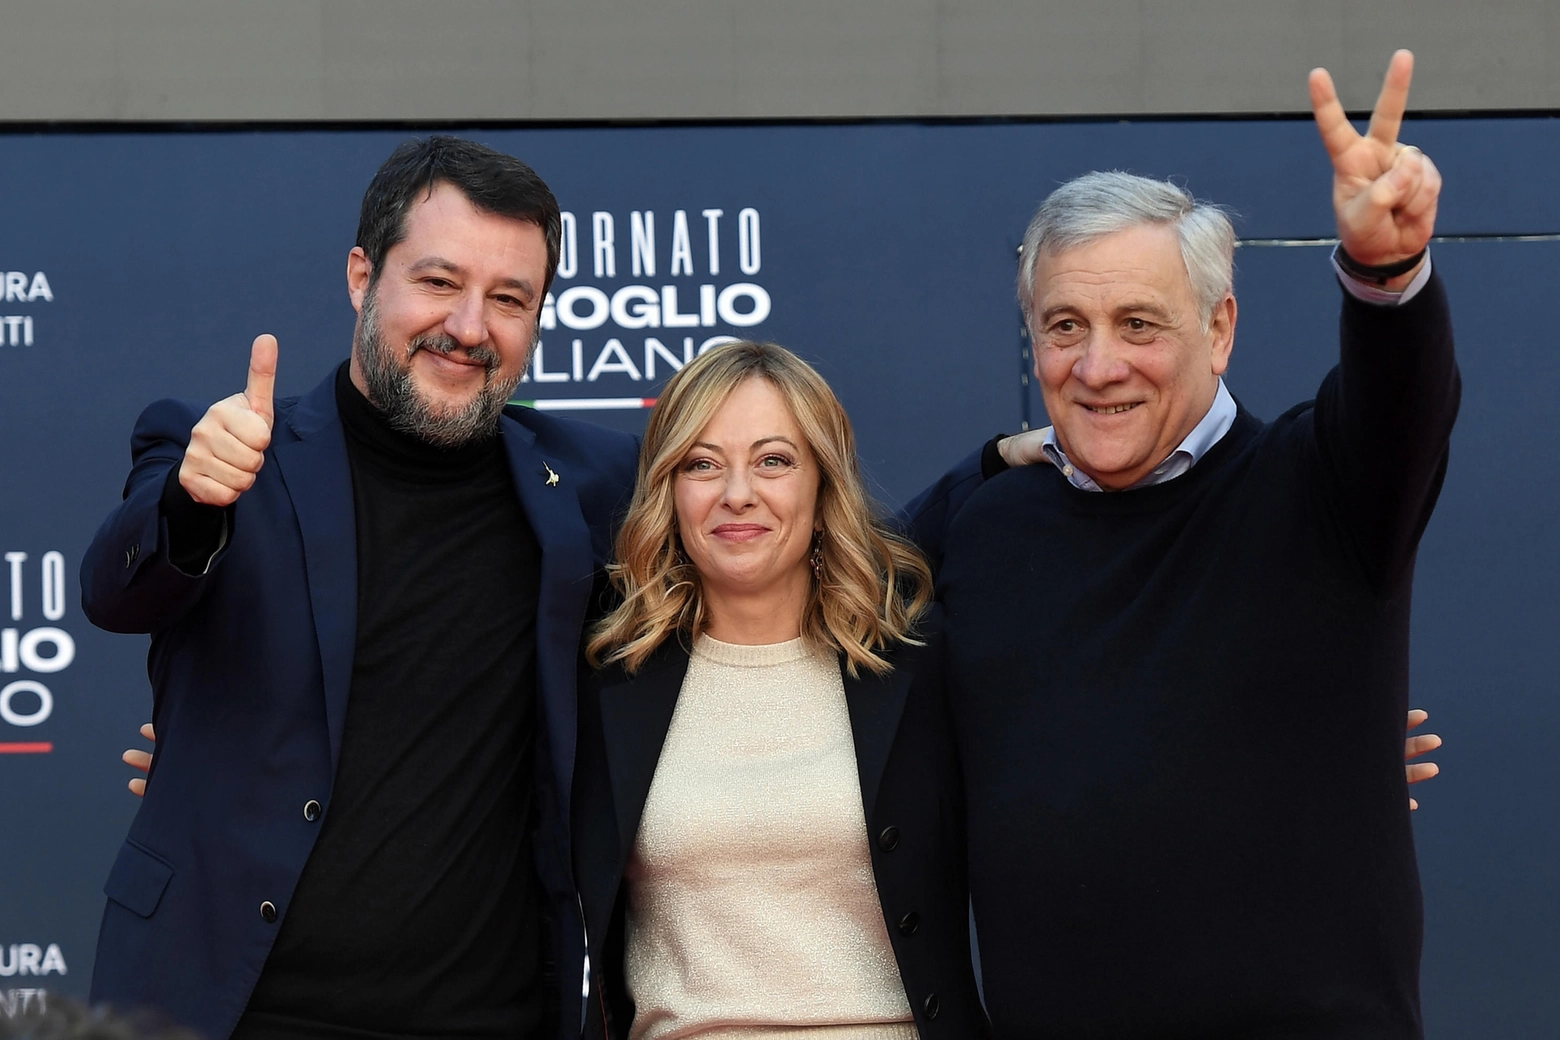 La presidente del Consiglio Giorgia Meloni insieme ai vicepremier Matteo Salvini e Antonio Tajani